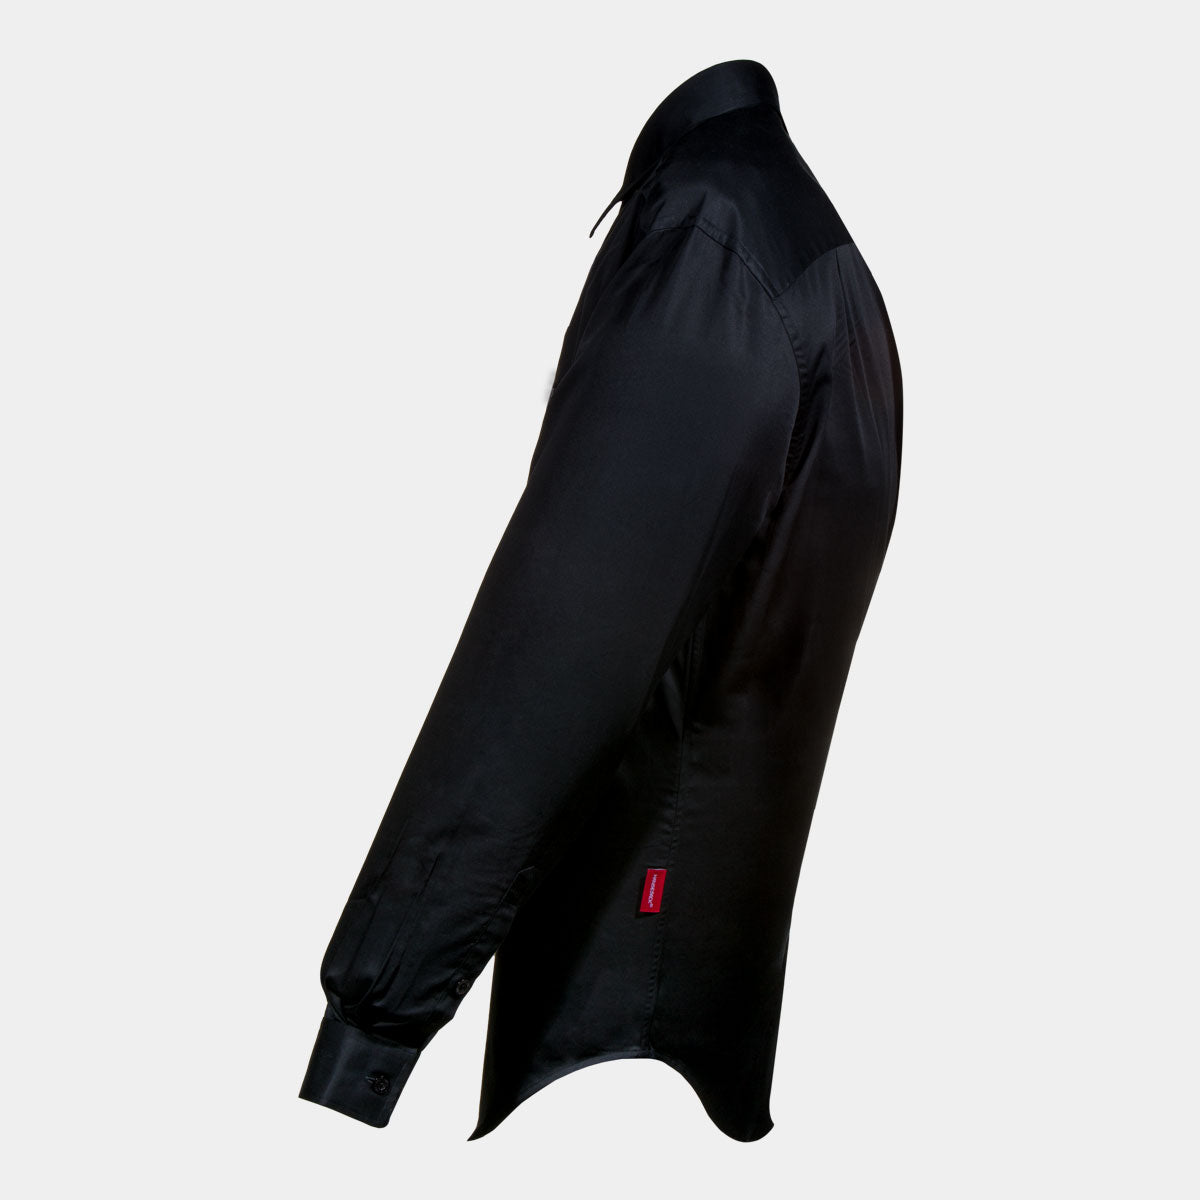 Hansesack Produktbild schwarzes Business-Hemd mit Brusttasche seidig glänzend von der Seite